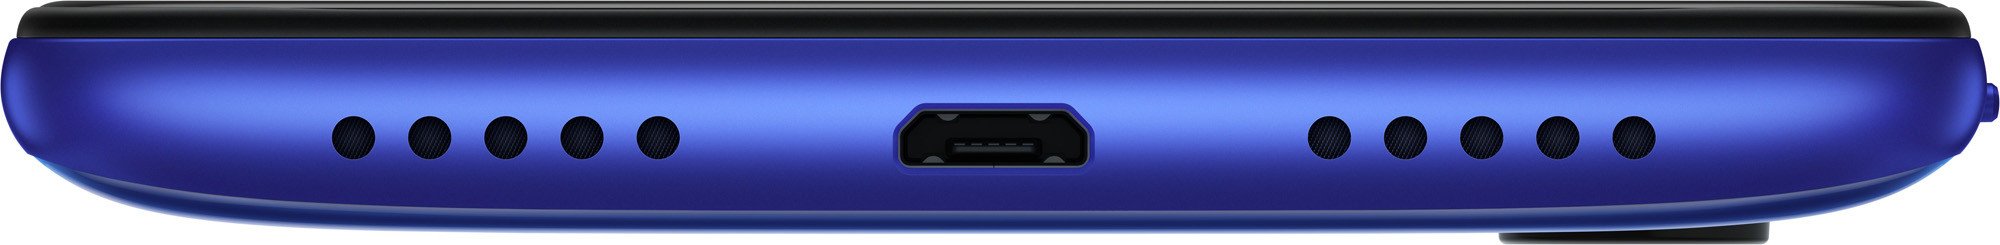 Смартфон Xiaomi Redmi 7 3/32GB Blue